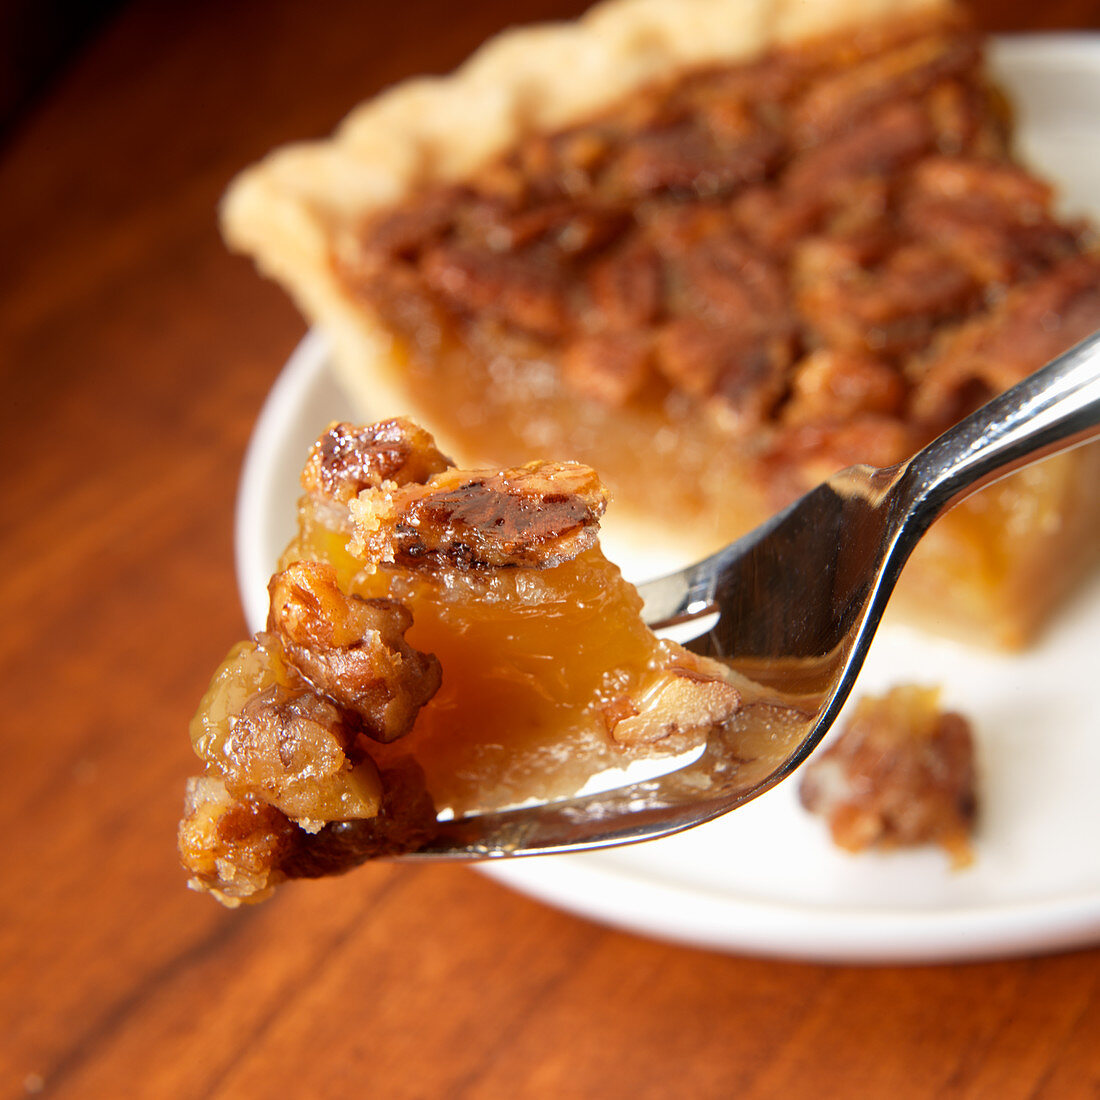 Pecan pie on fork in front of pie slice